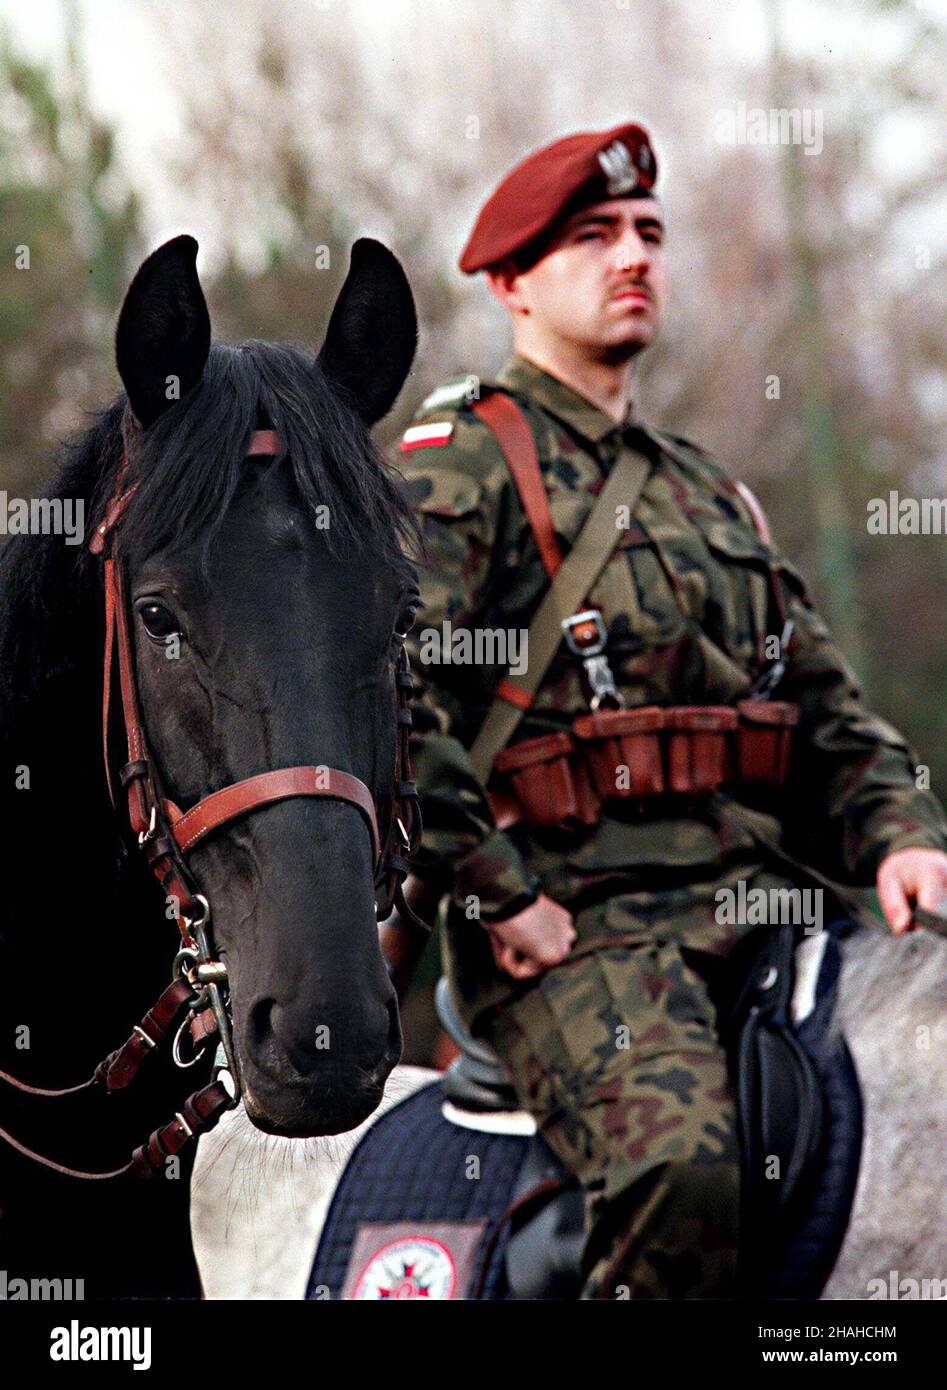 Weso³a k. Warszawy, 08.11.2000. ¯o³nierze ze Szwadronu Jazdy Rzeczpospolitej Polskiej æwicz¹ na hipodromie w Starej Mi³osnej (Weso³a k. Warszawy) przed uroczystoœciami zwi¹zanymi ze Œwiêtem 11 Listopada.  (kru) PAP/Przemek Wierzchowski       Wesola, 08.11.2000. Light cavalry soldiers from Battalion of the Polish Army trains before National Independence Day, in Wesola near Warsaw.   (kru) PAP/Przemek Wierzchowski        (kru) PAP/Przemek Wierzchowski Stock Photo